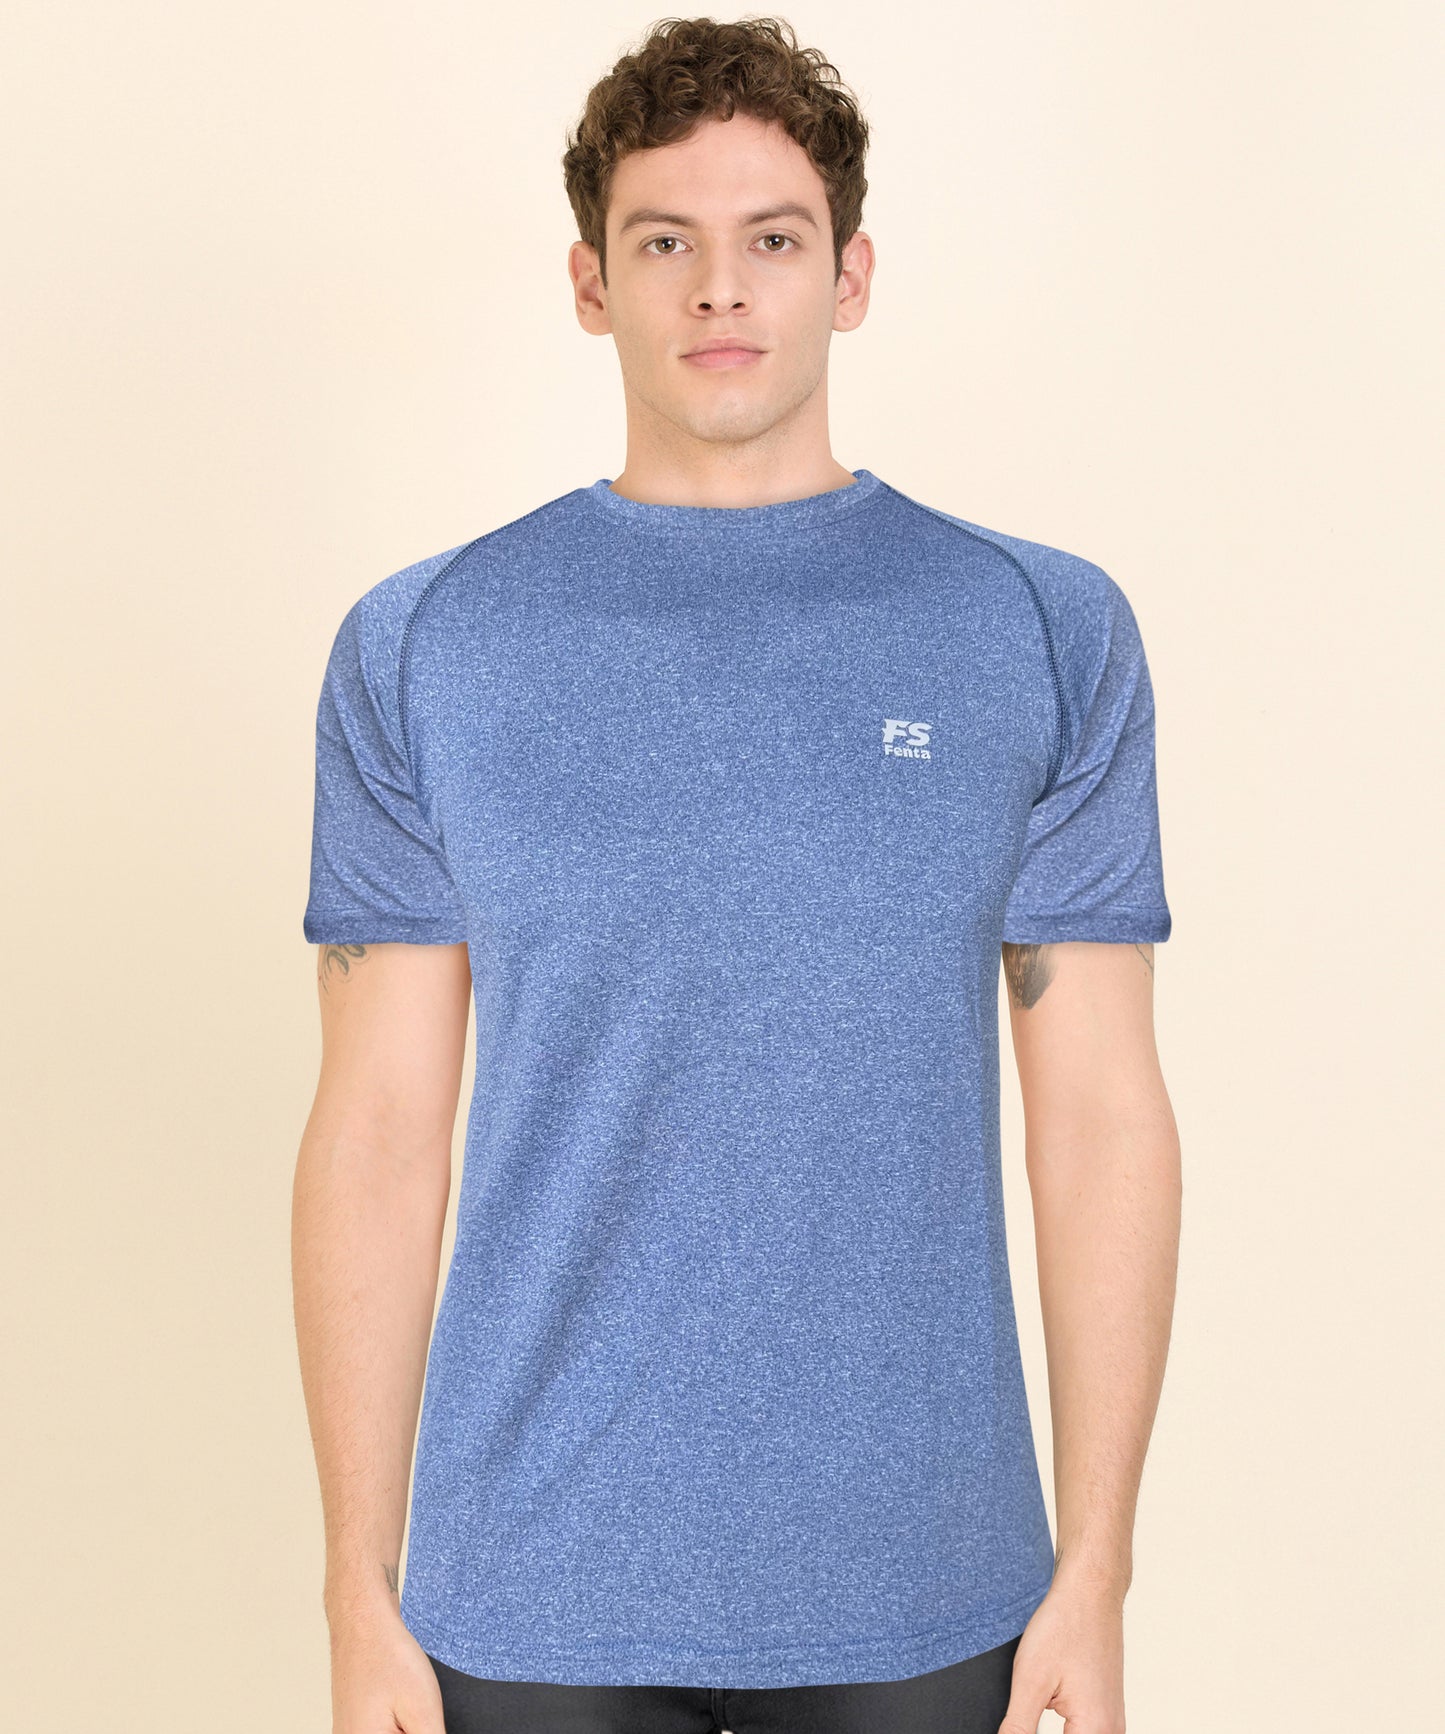 Fenta Sports Unisex Adam Activewear Dry Fit Tshirt